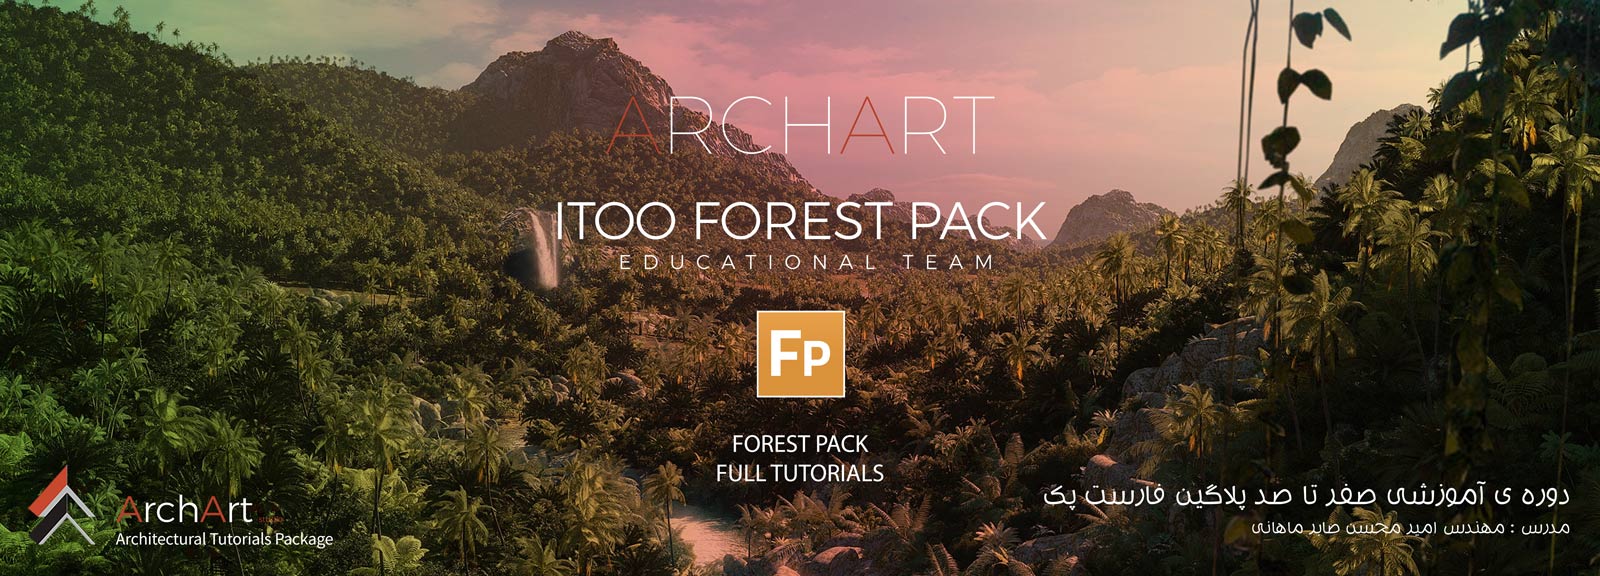 جلسه ی پنجم پلاگین فارست پک - Itoo Forest Pack